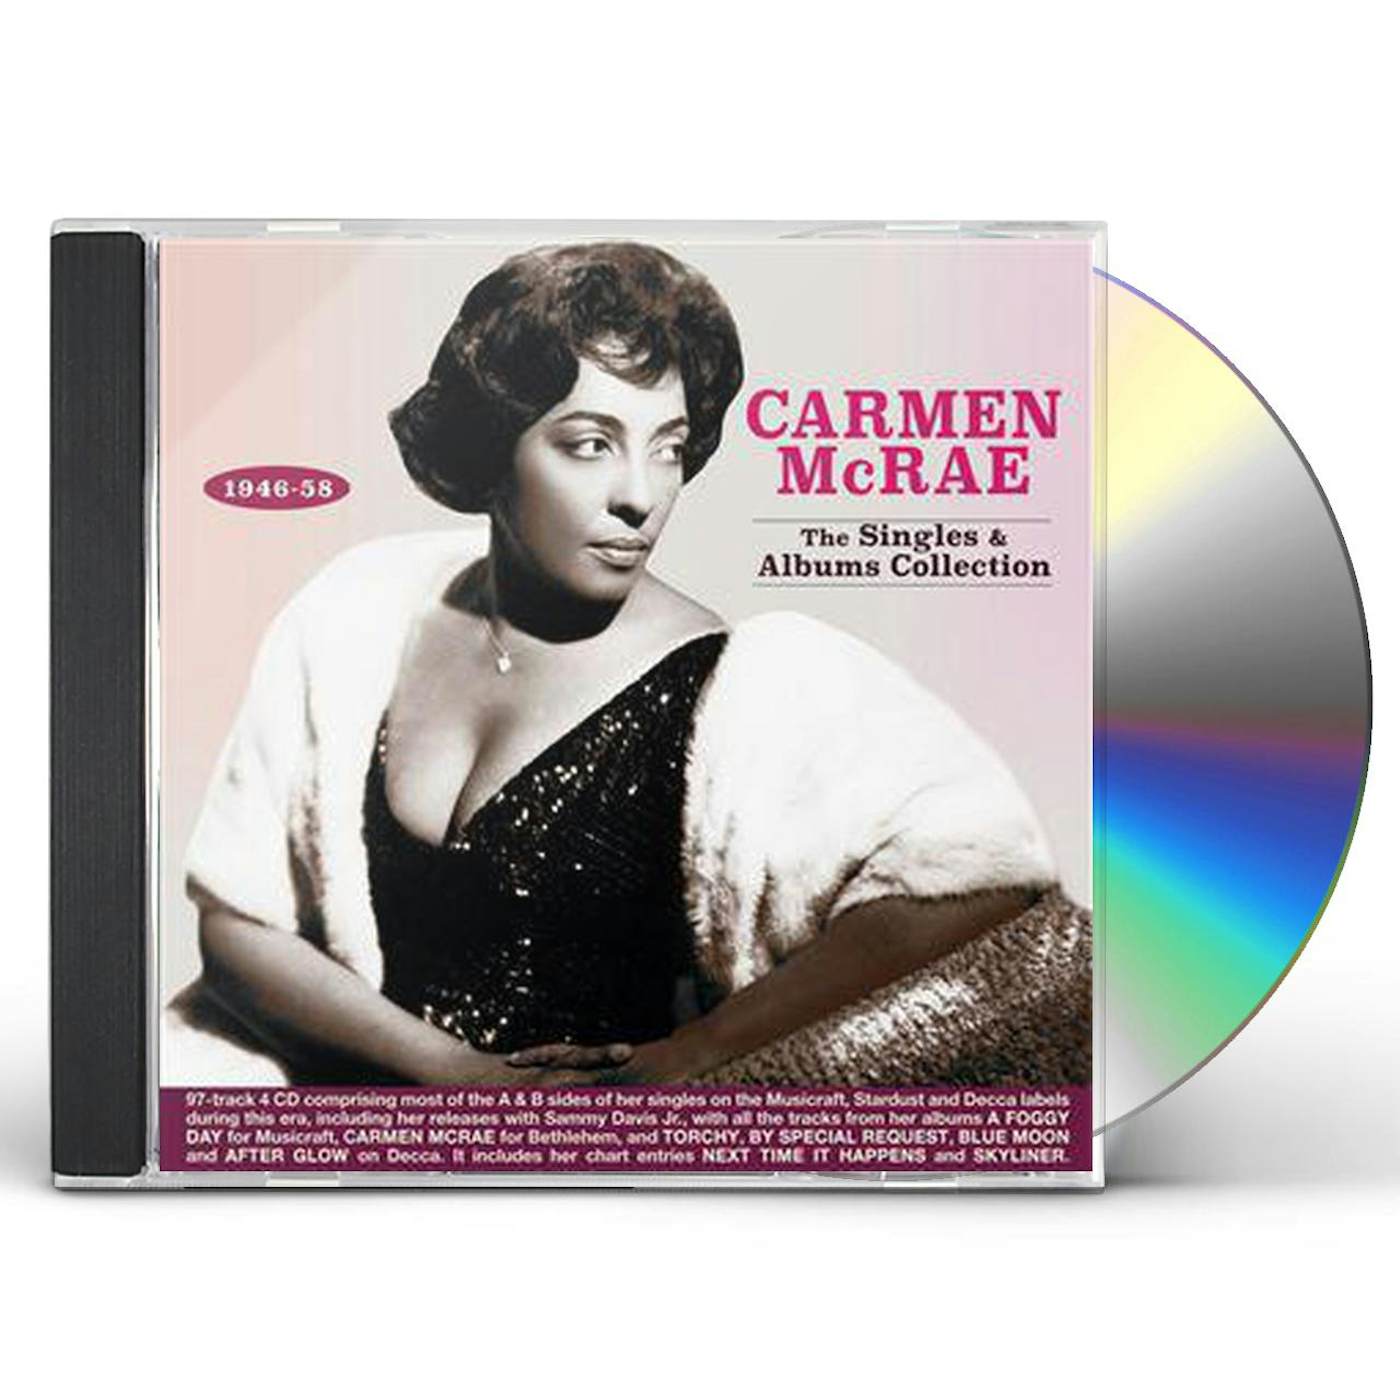 Carmen McRae SINGLES & ALBUMS COLLECTION 1946-58 CD